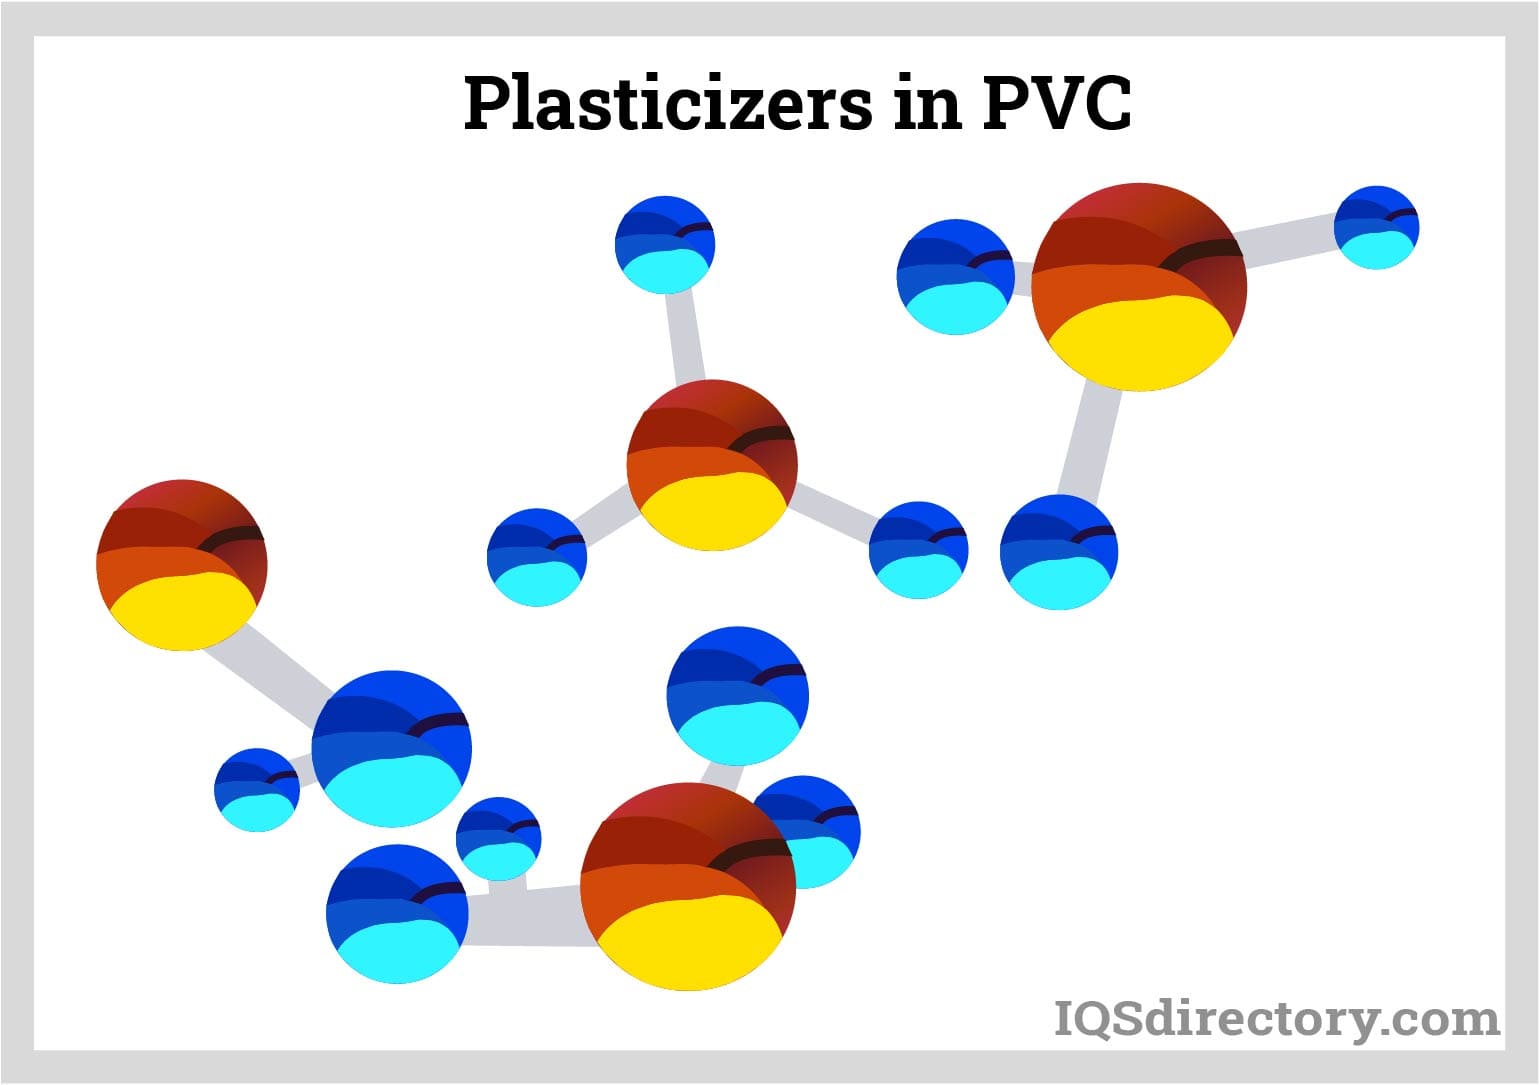 Plasticizers in PVC